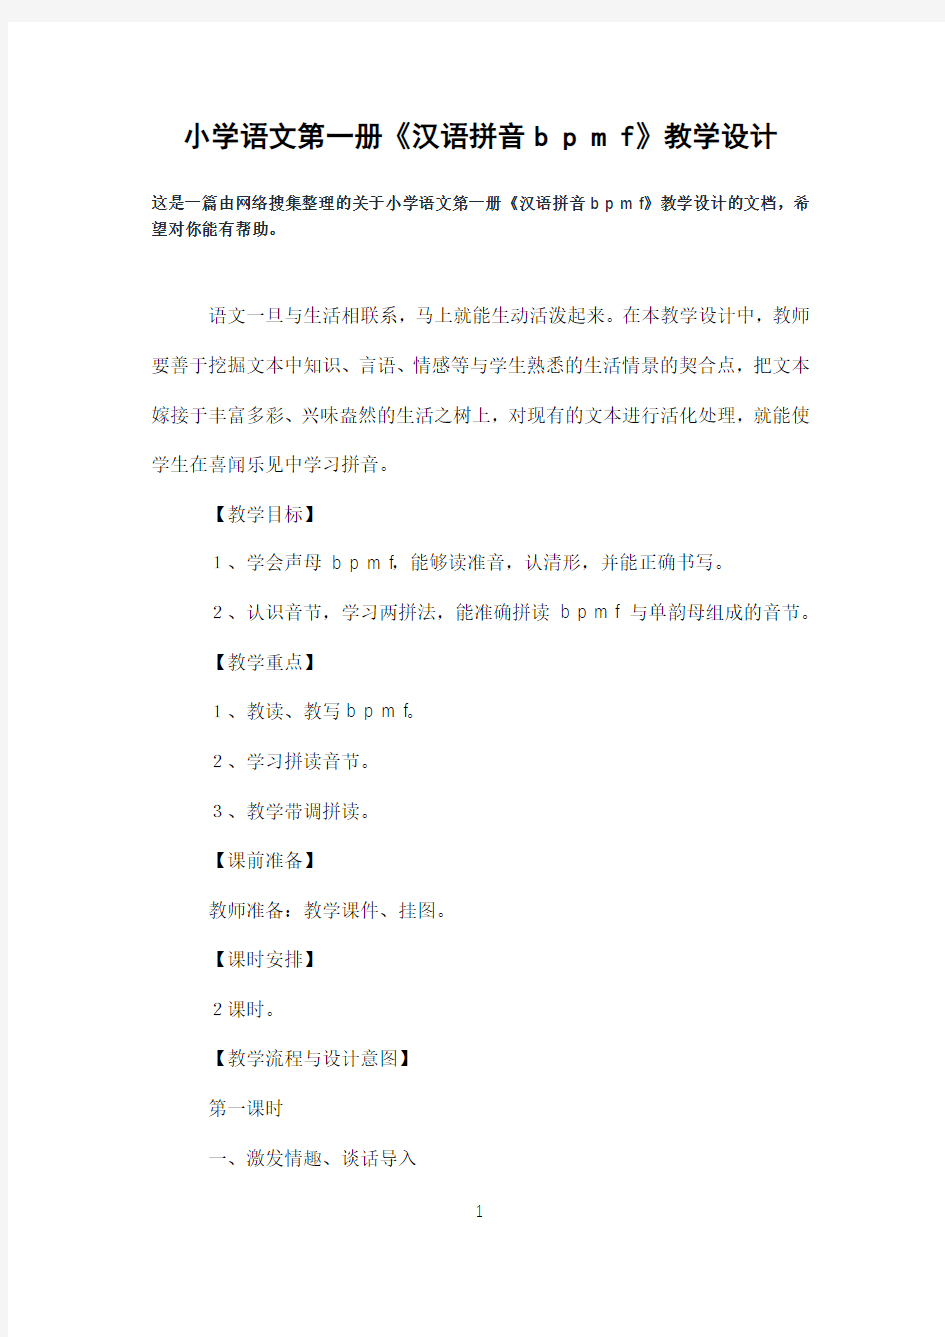 小学语文第一册《汉语拼音bpmf》教学设计